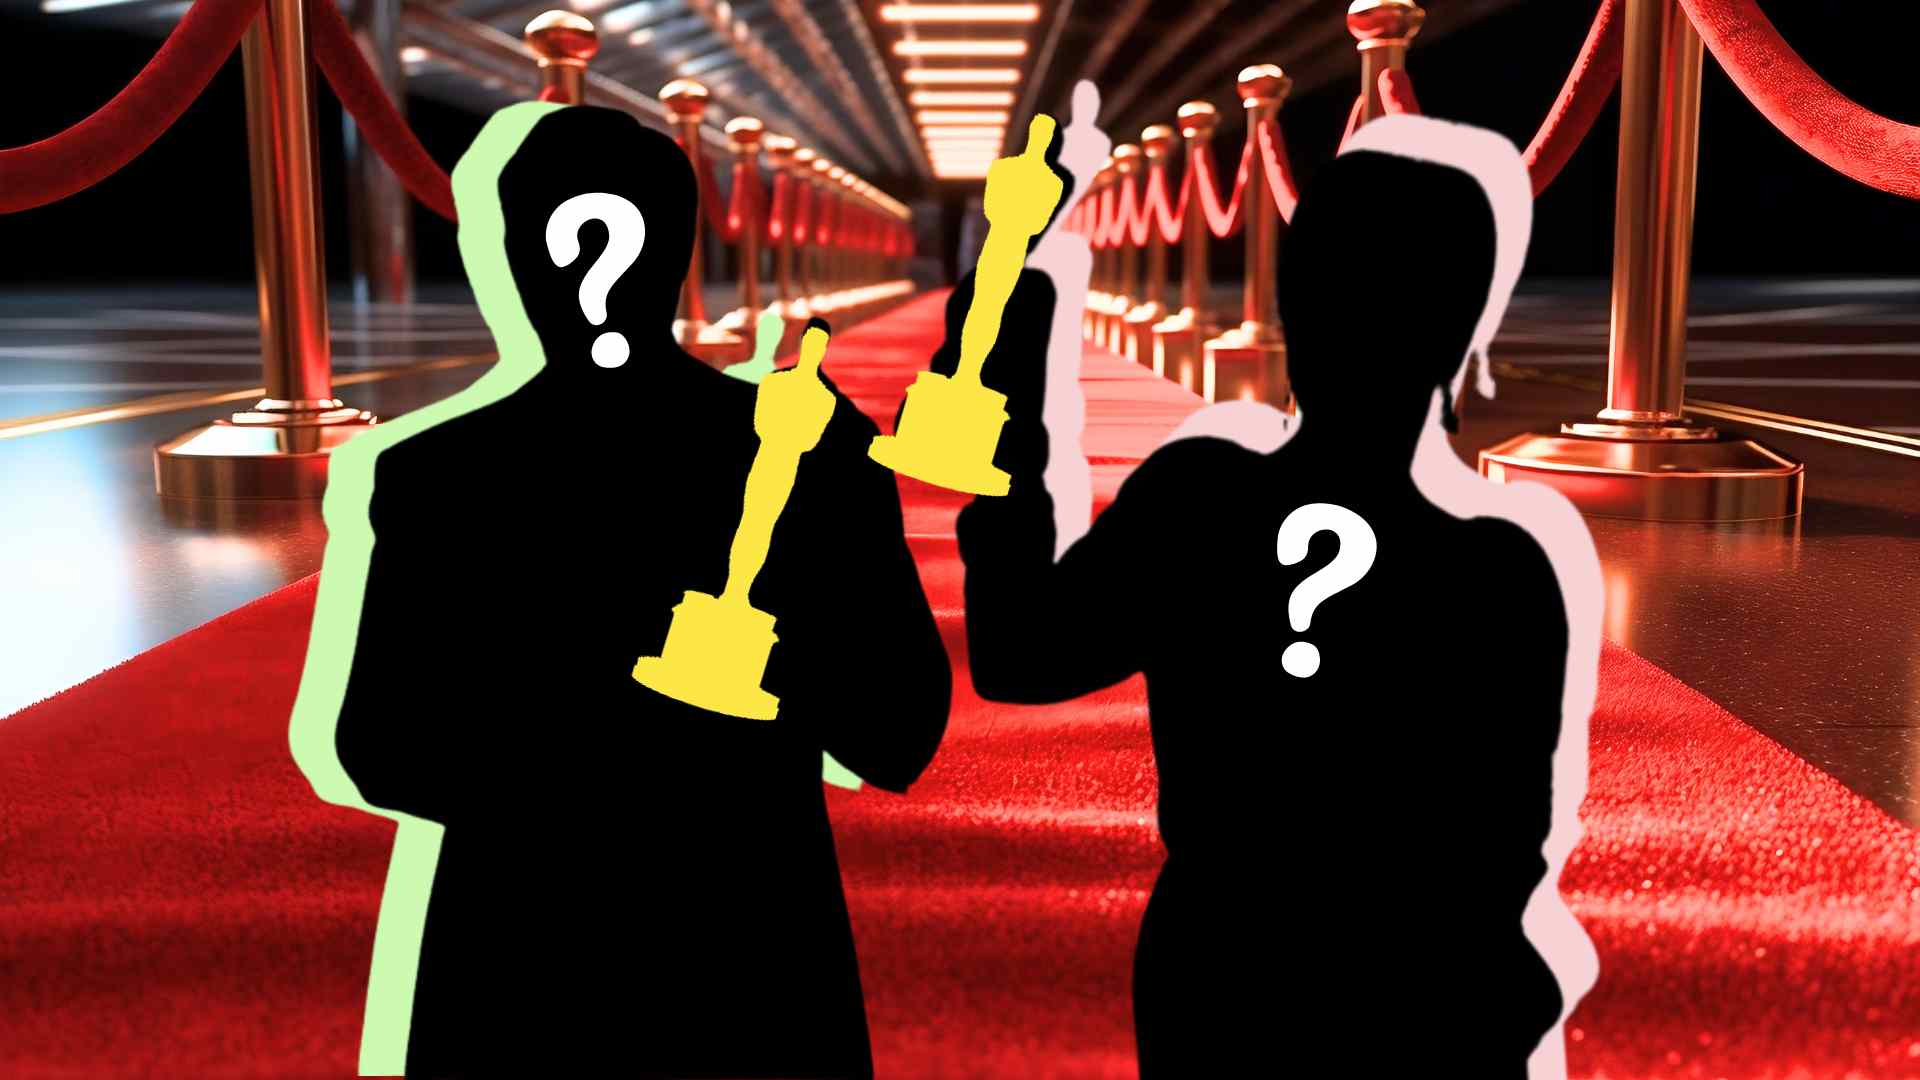 Aquests són el millor actor i millor actriu de la història dels Oscars segons la IA, hi estàs d'acord?